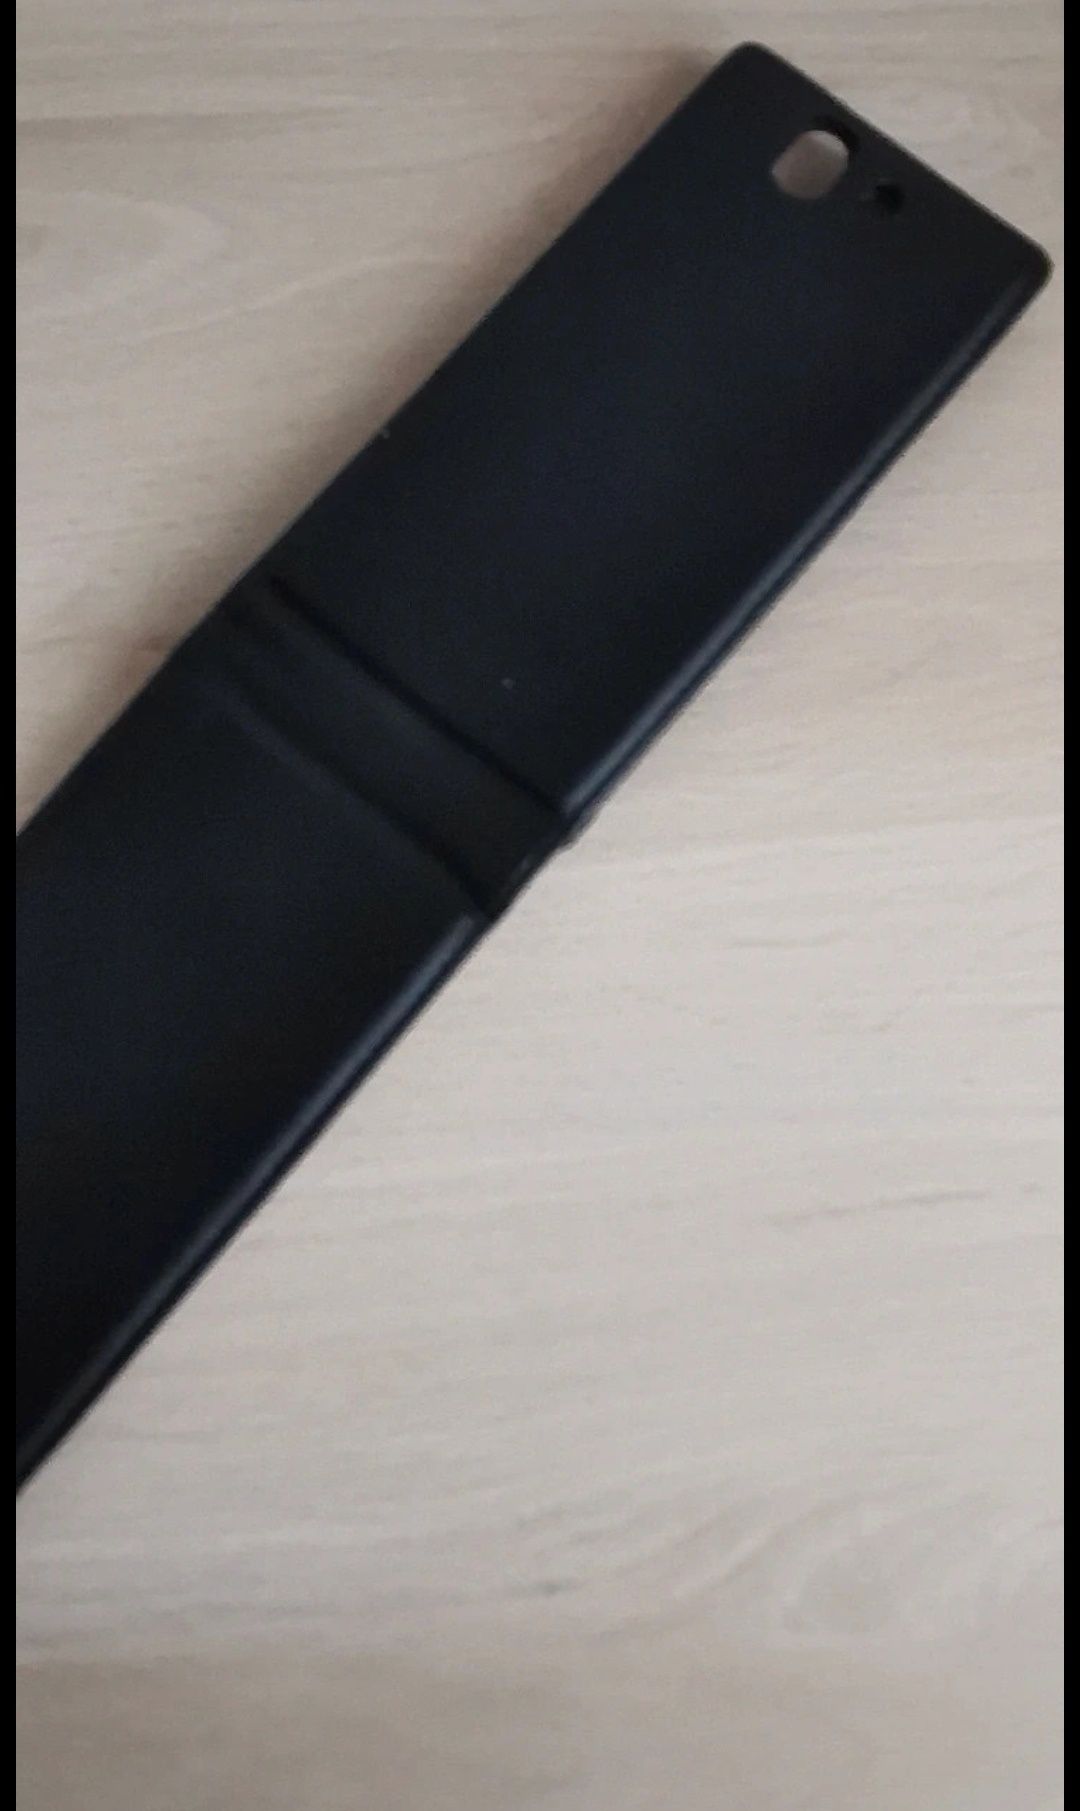 Sony Xperia Z1 kabura pionowa kolor czarny.